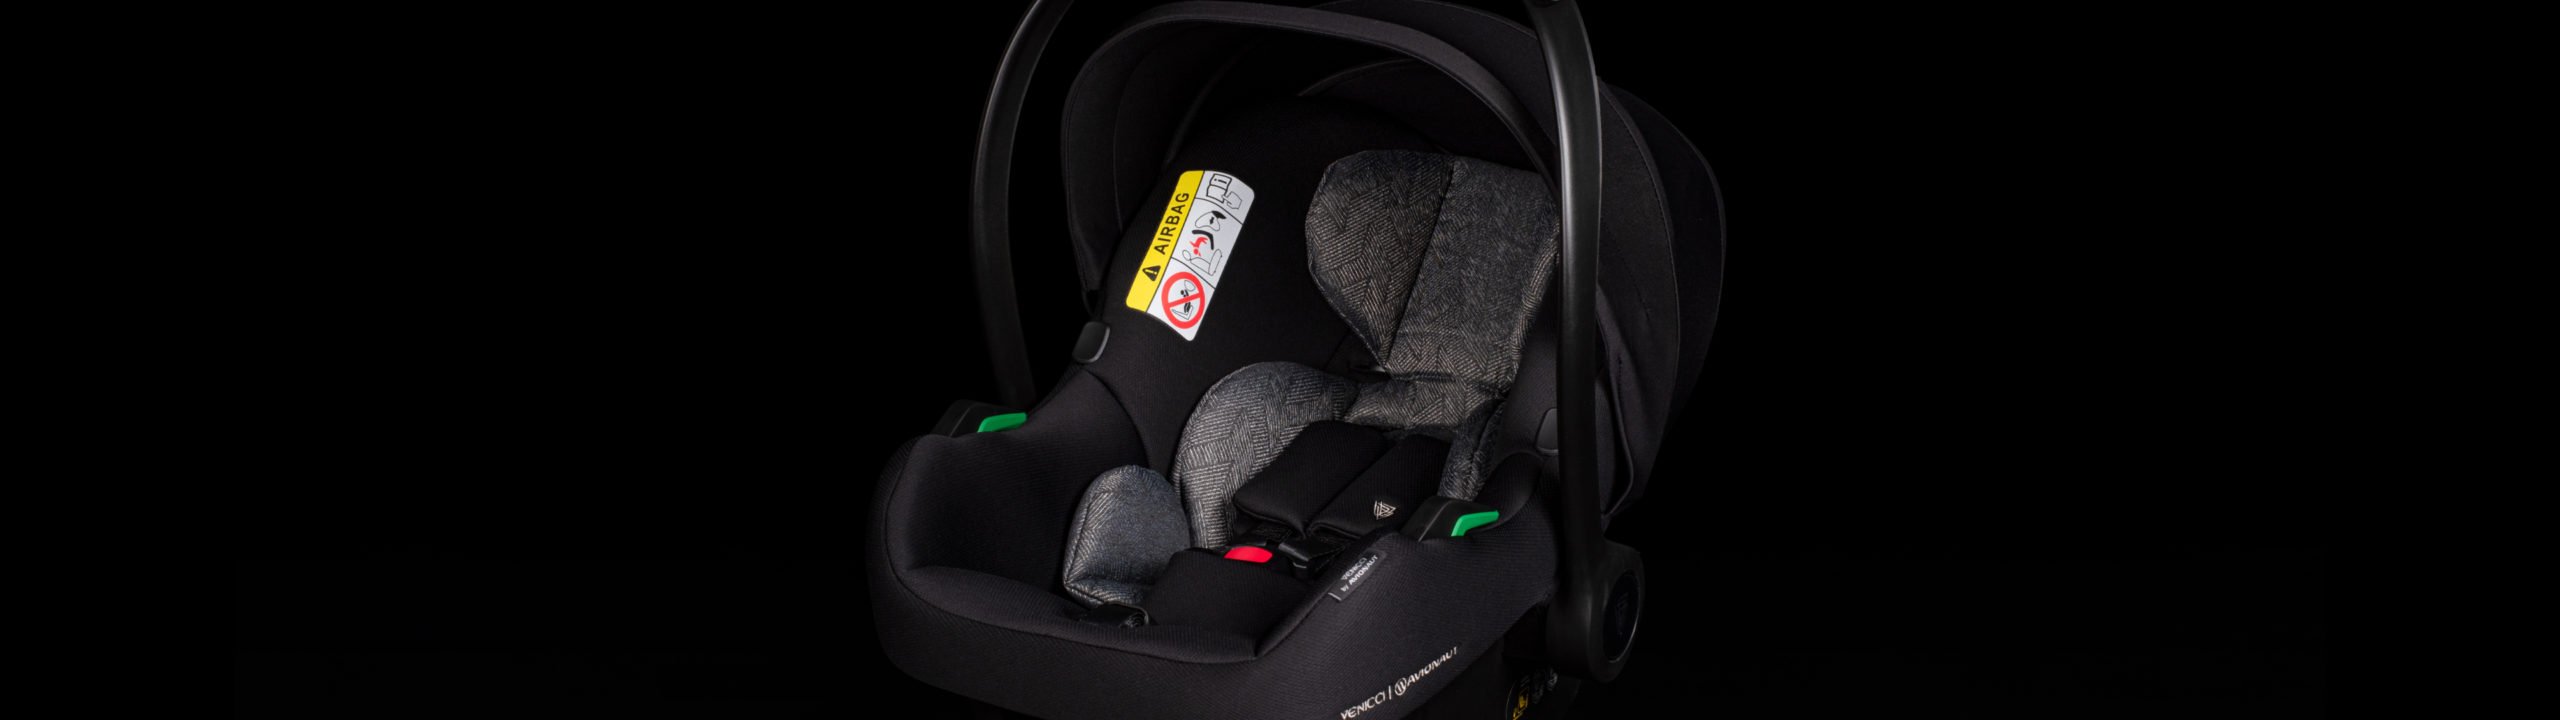 NEW Venicci I-Size Car seats – AeroFIX and ULTRALITE